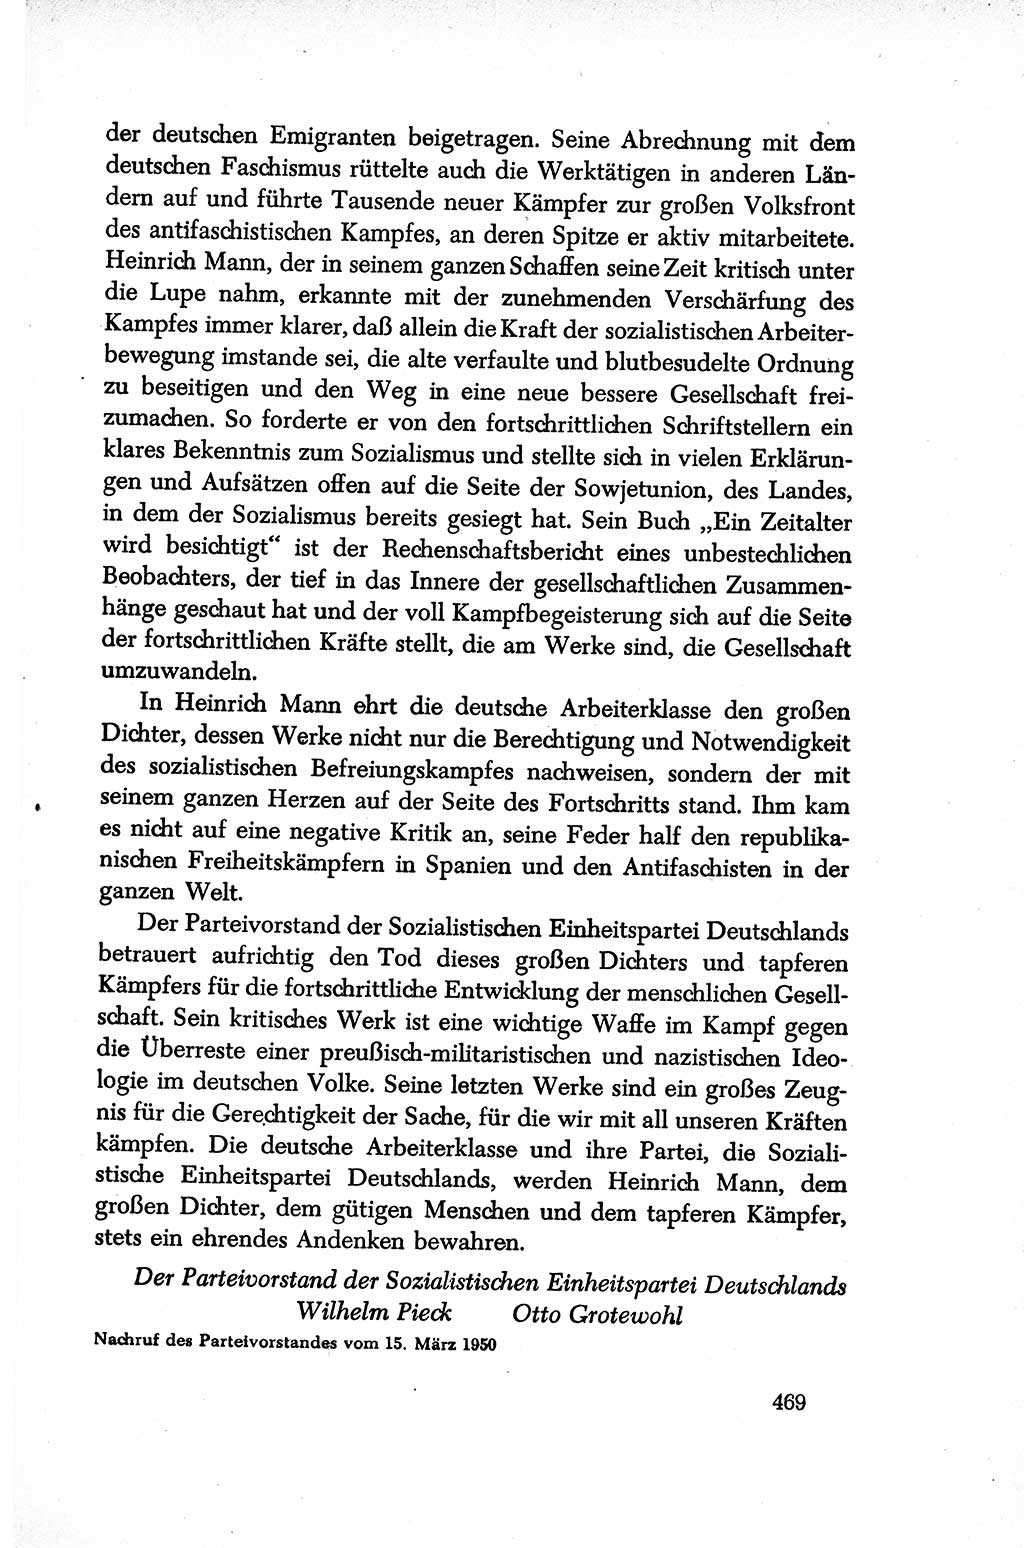 Dokumente der Sozialistischen Einheitspartei Deutschlands (SED) [Sowjetische Besatzungszone (SBZ) Deutschlands/Deutsche Demokratische Republik (DDR)] 1948-1950, Seite 469 (Dok. SED SBZ Dtl. DDR 1948-1950, S. 469)